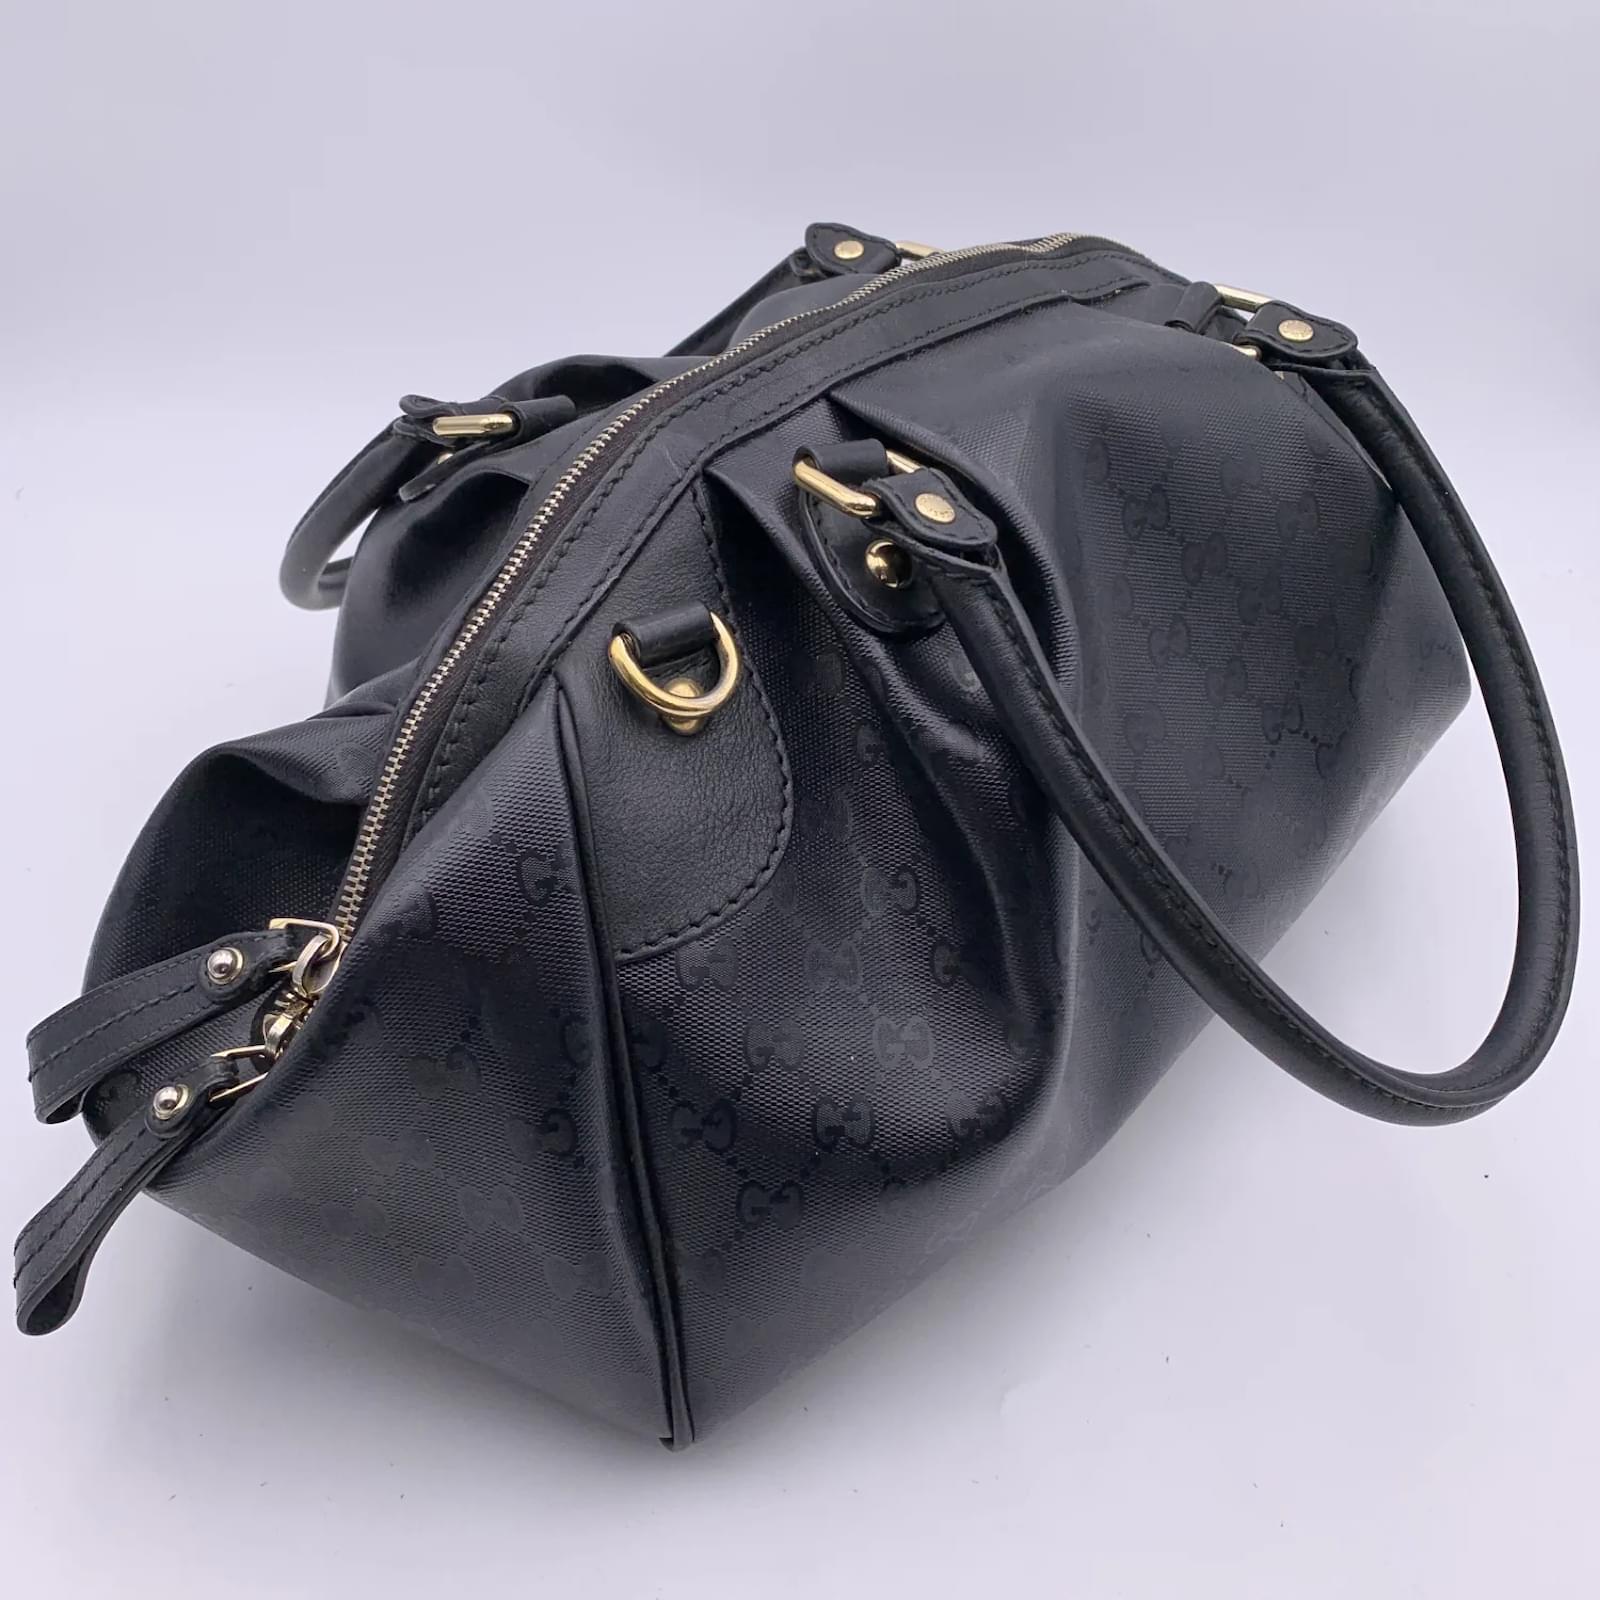 Medium Boston Bag in Monogram Leather Black